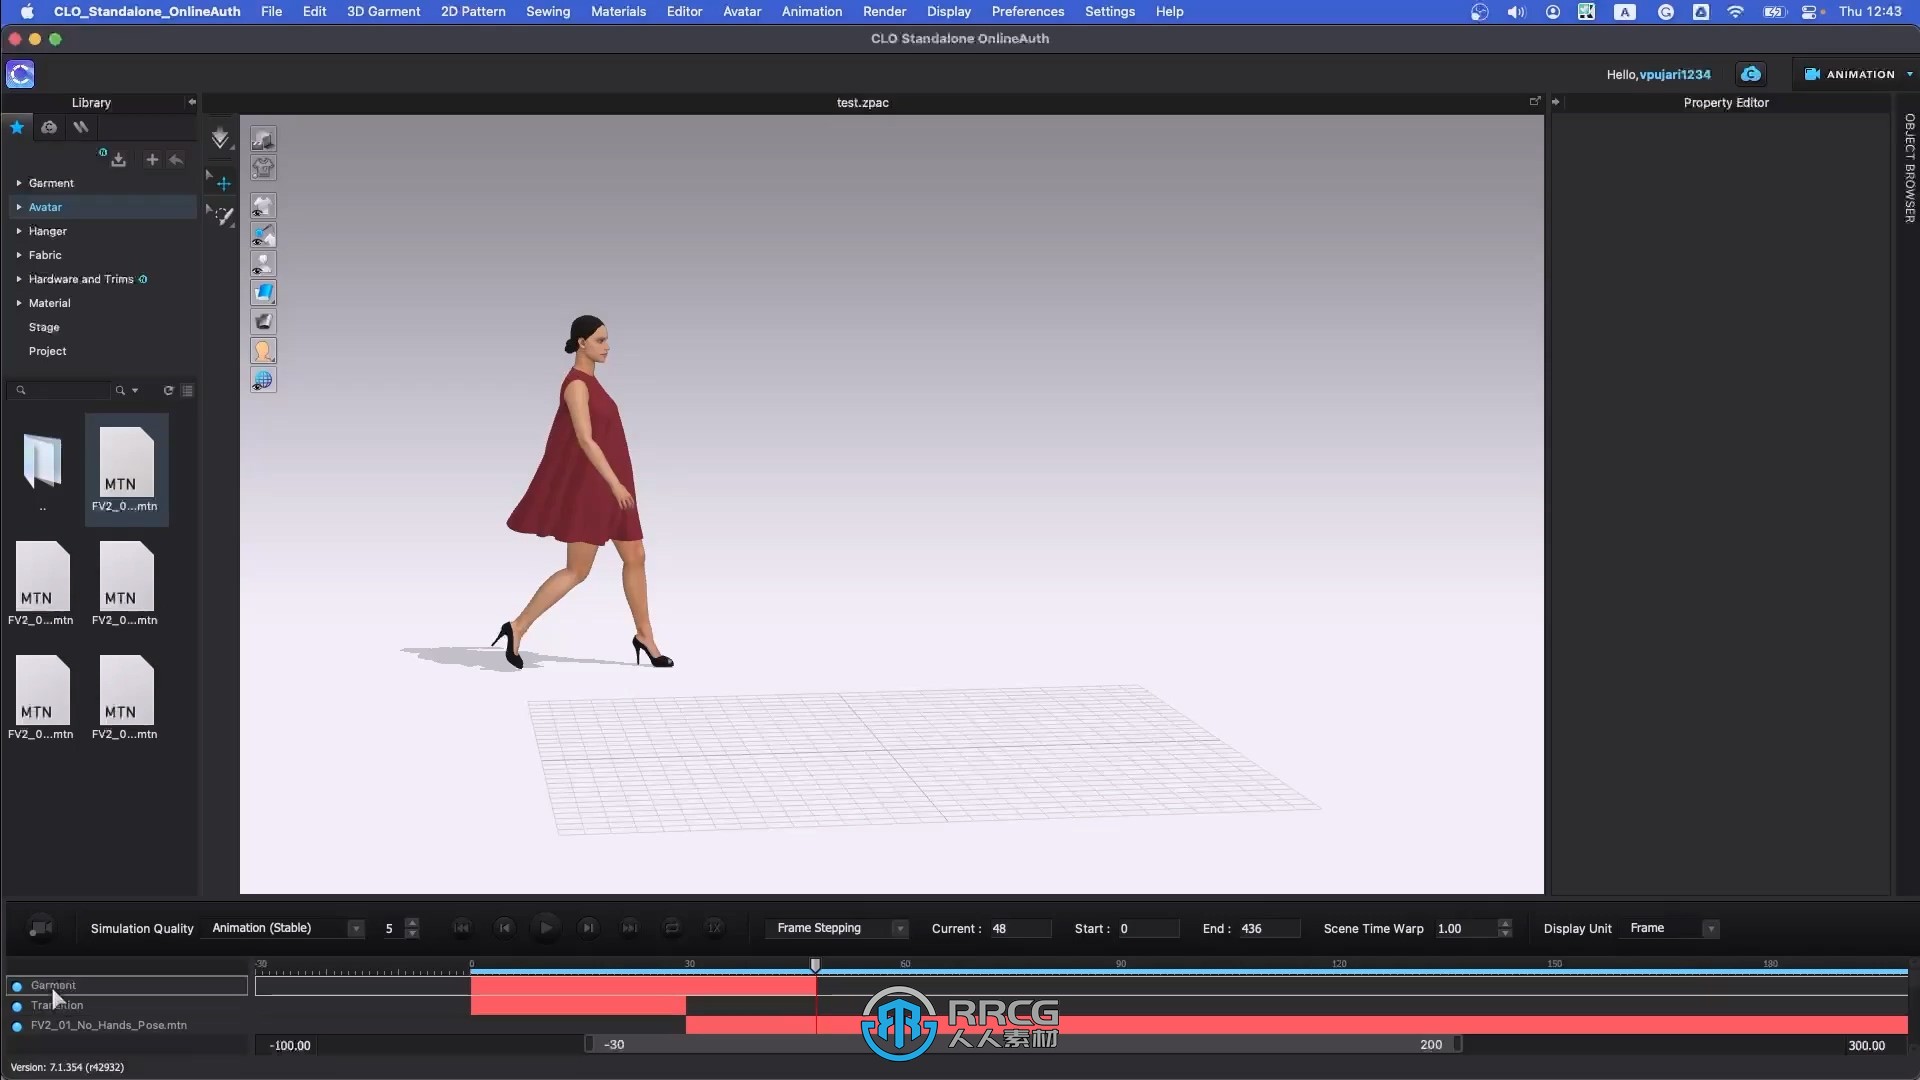 CLO 3D设计工具完整指南技术训练视频教程